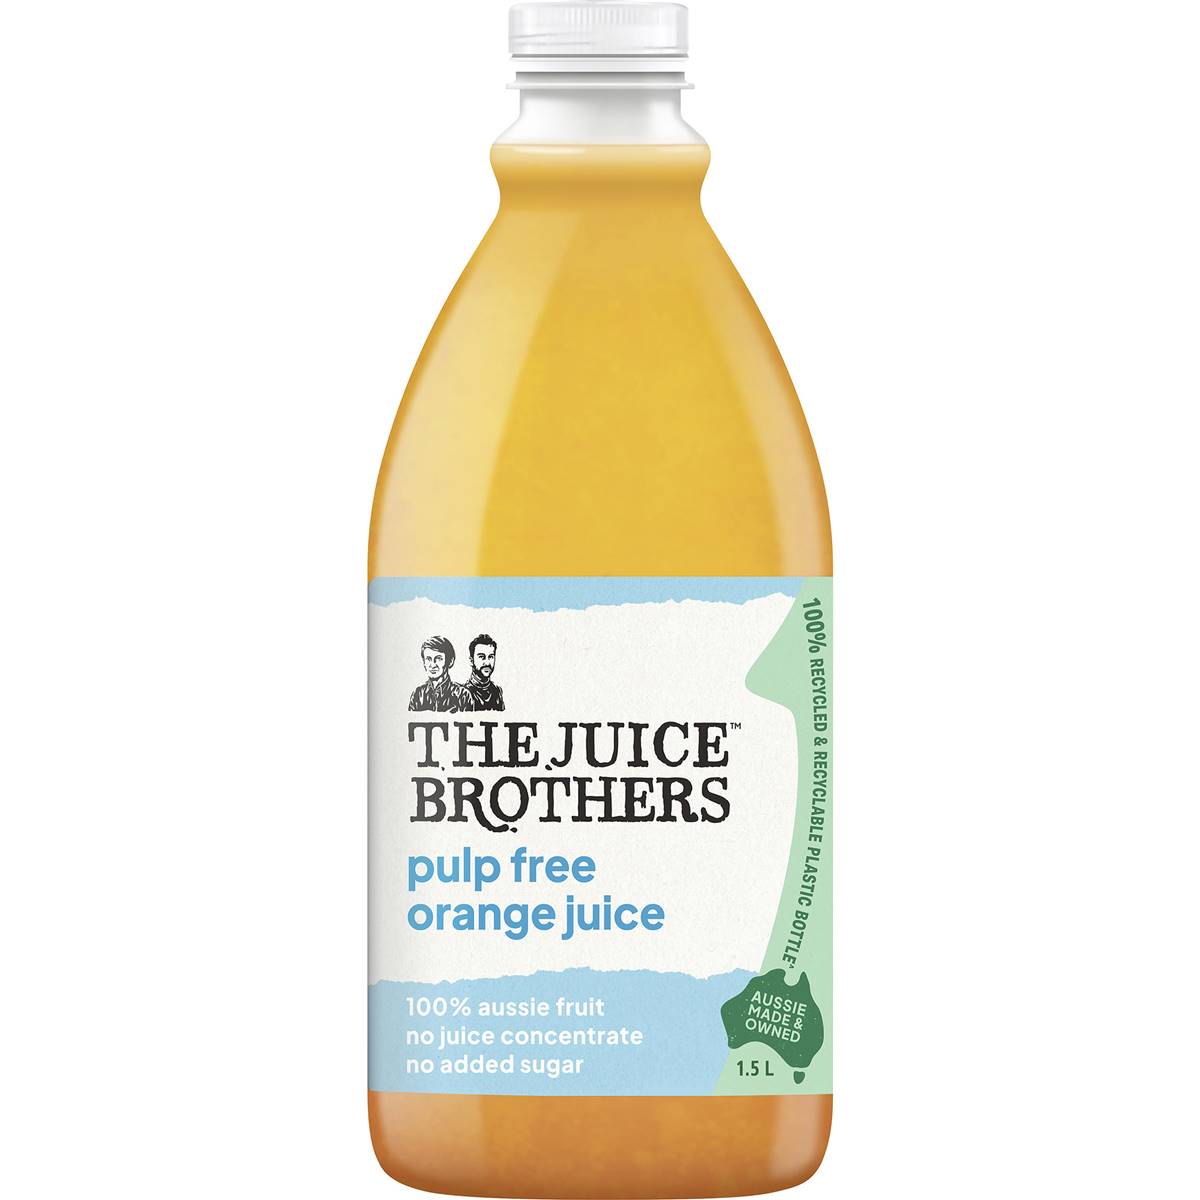 The Juice Brothers Orange Juice Pulp-free 1.5L